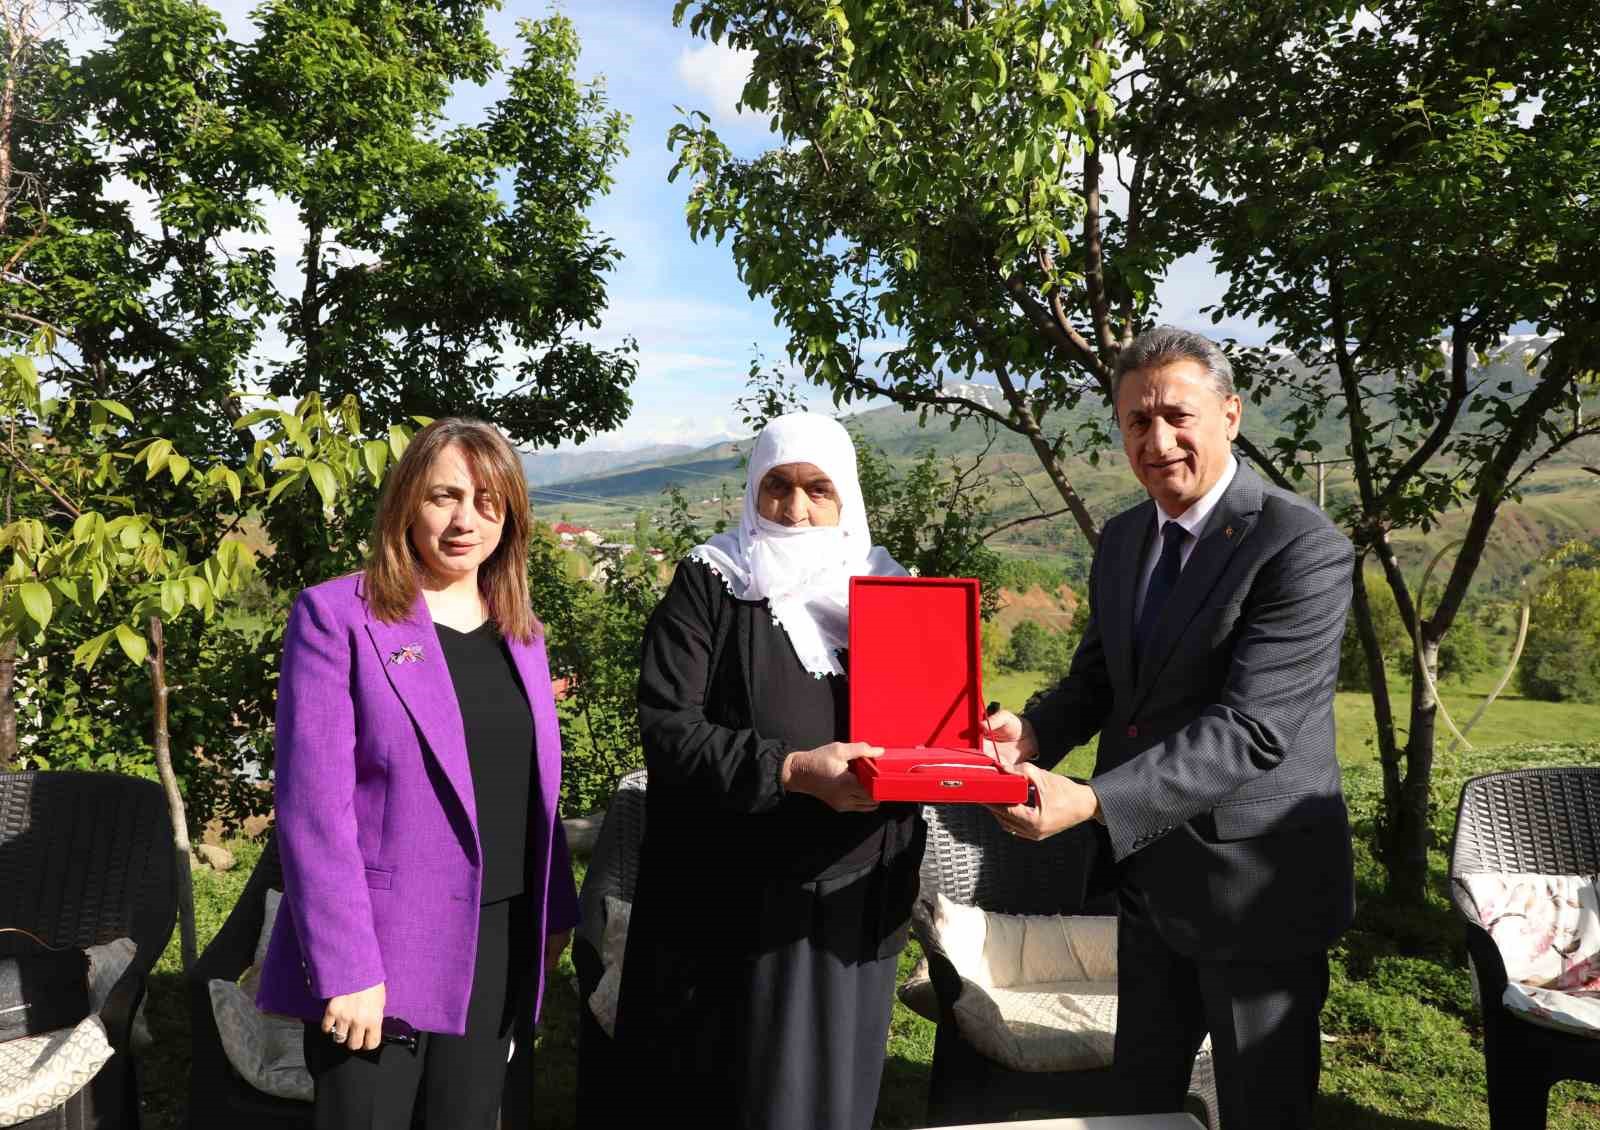 Bitlis Valisi Karaömeroğlu, şehit ailelerini ziyaret etti
